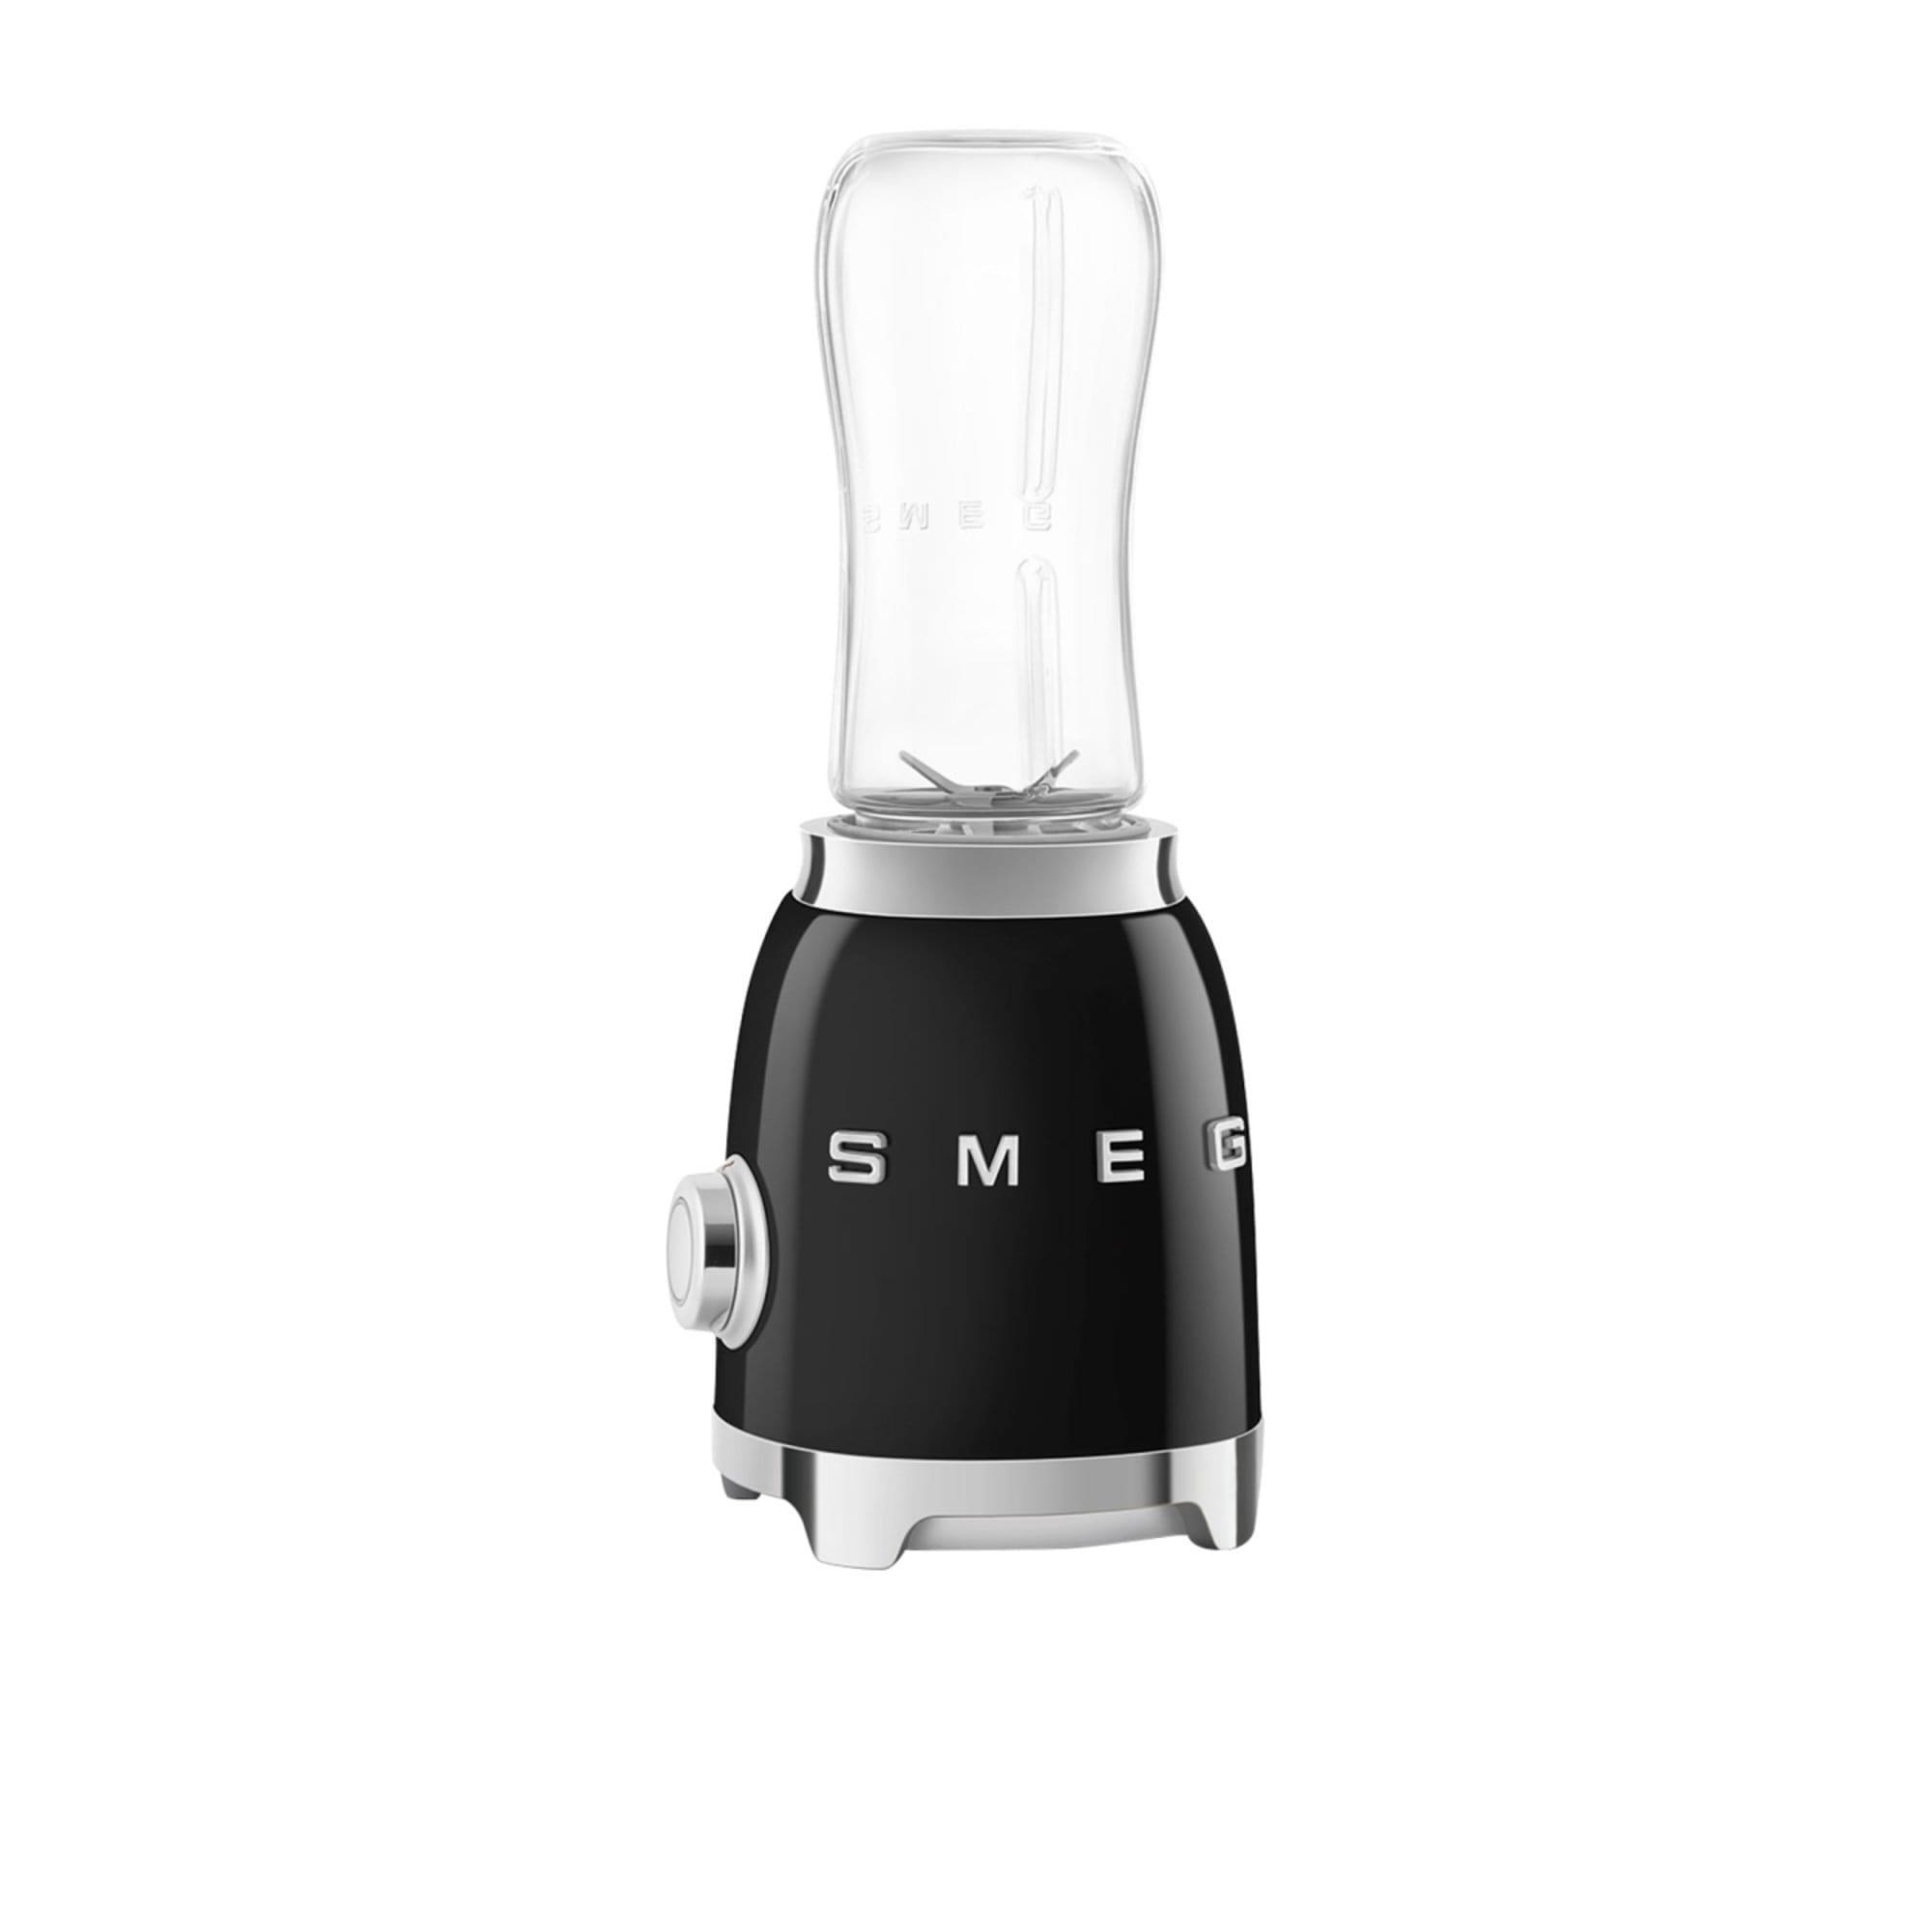 Smeg 50's Retro Style Mini Blender Black Image 5